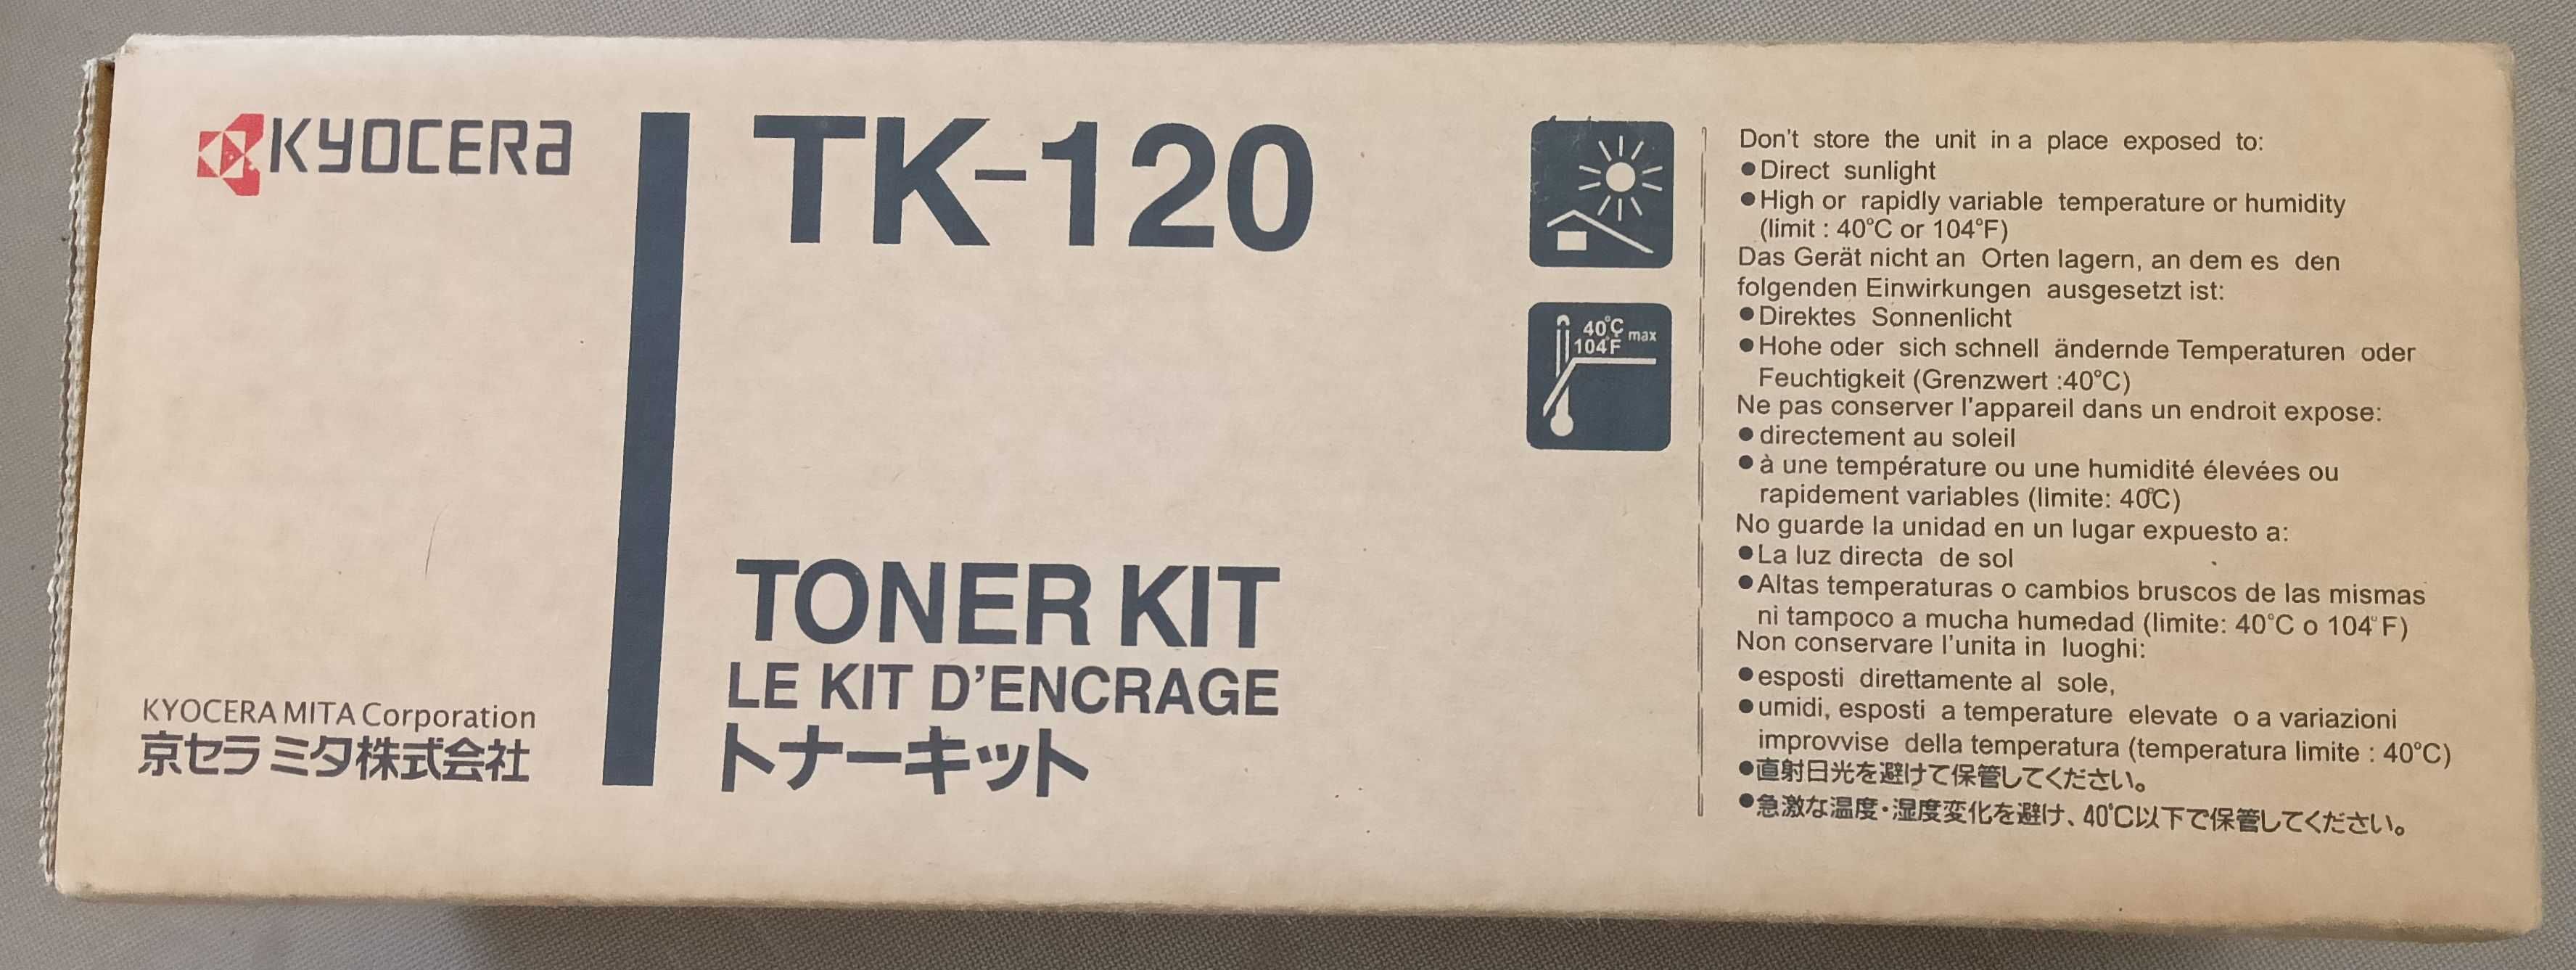 Oryginalny nowy toner TK120, TK-120 Kyocera